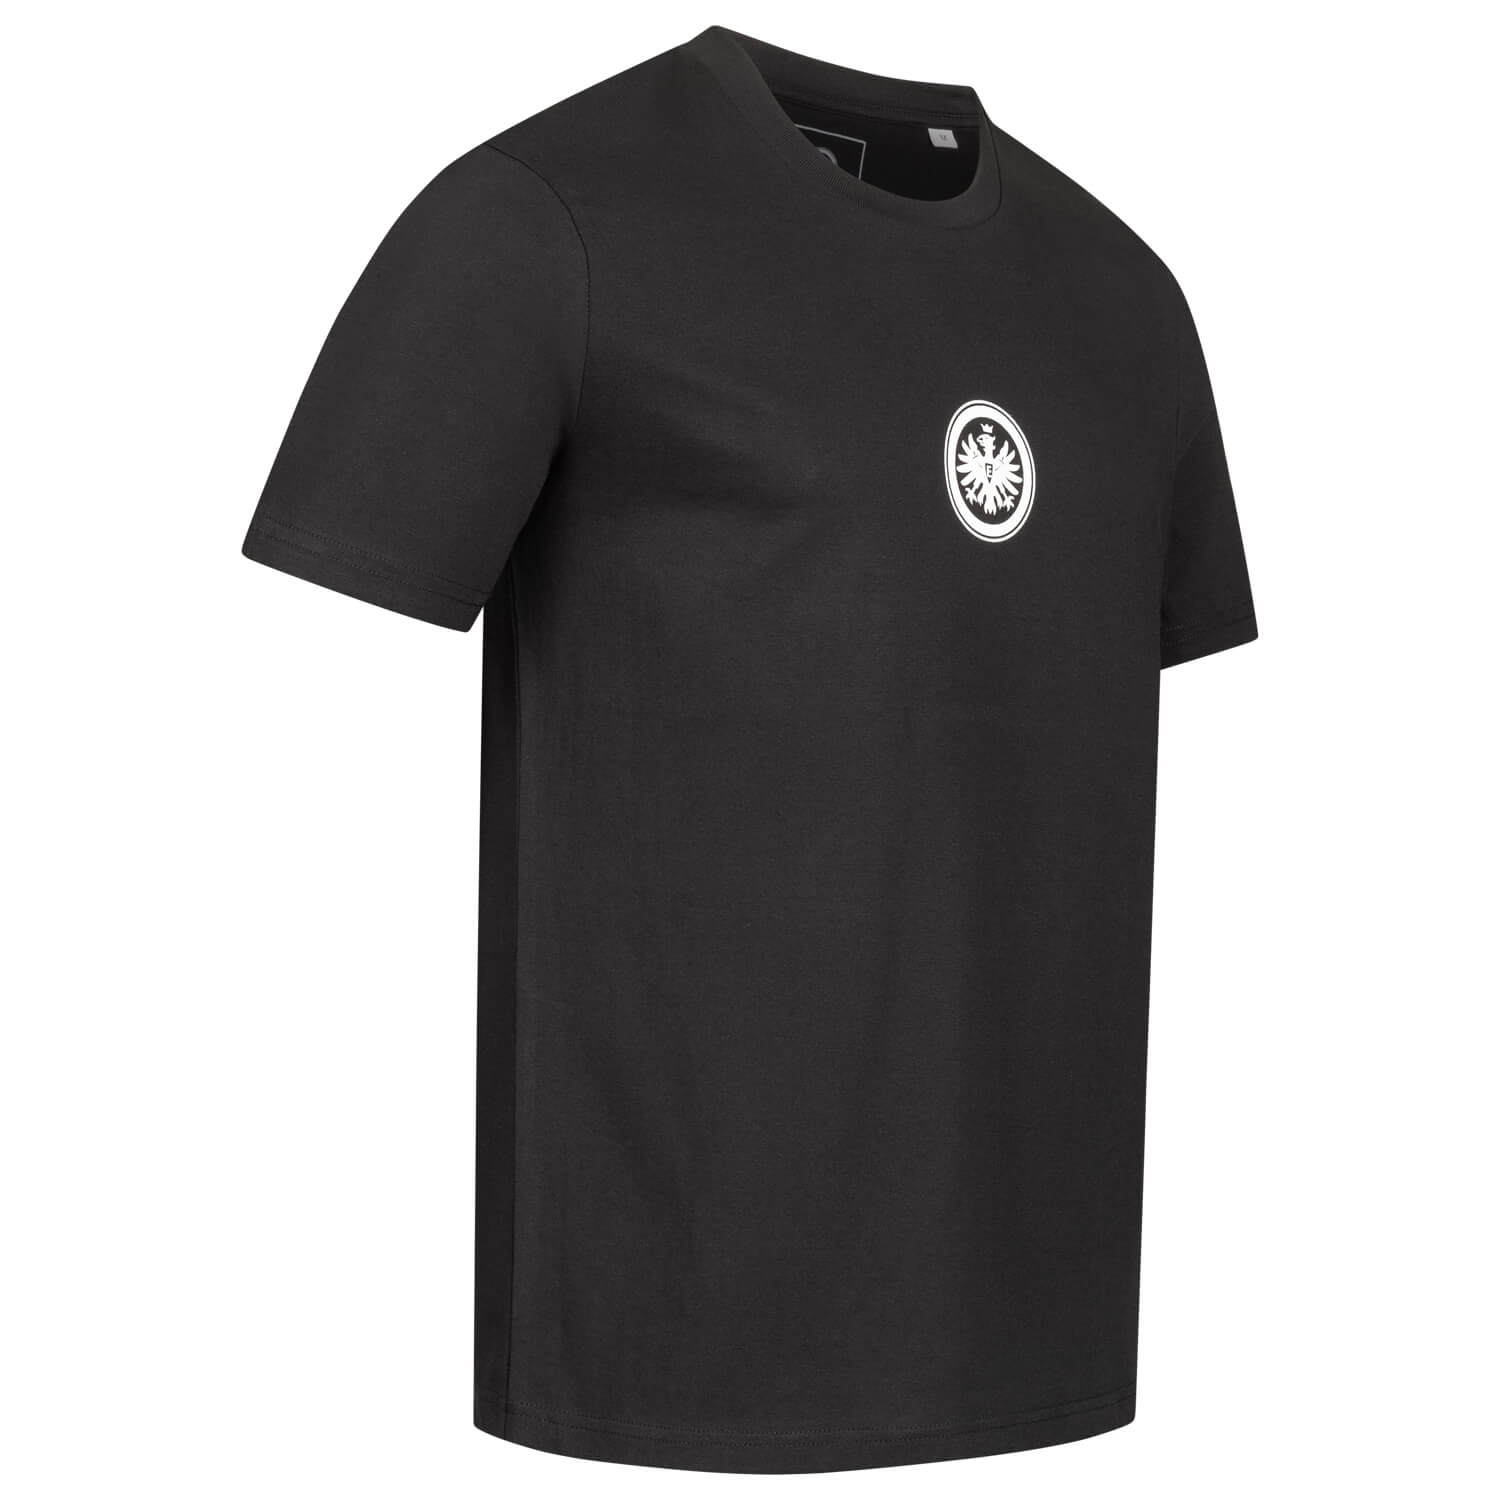 Bild 4: T-Shirt Ein Verein Schwarz